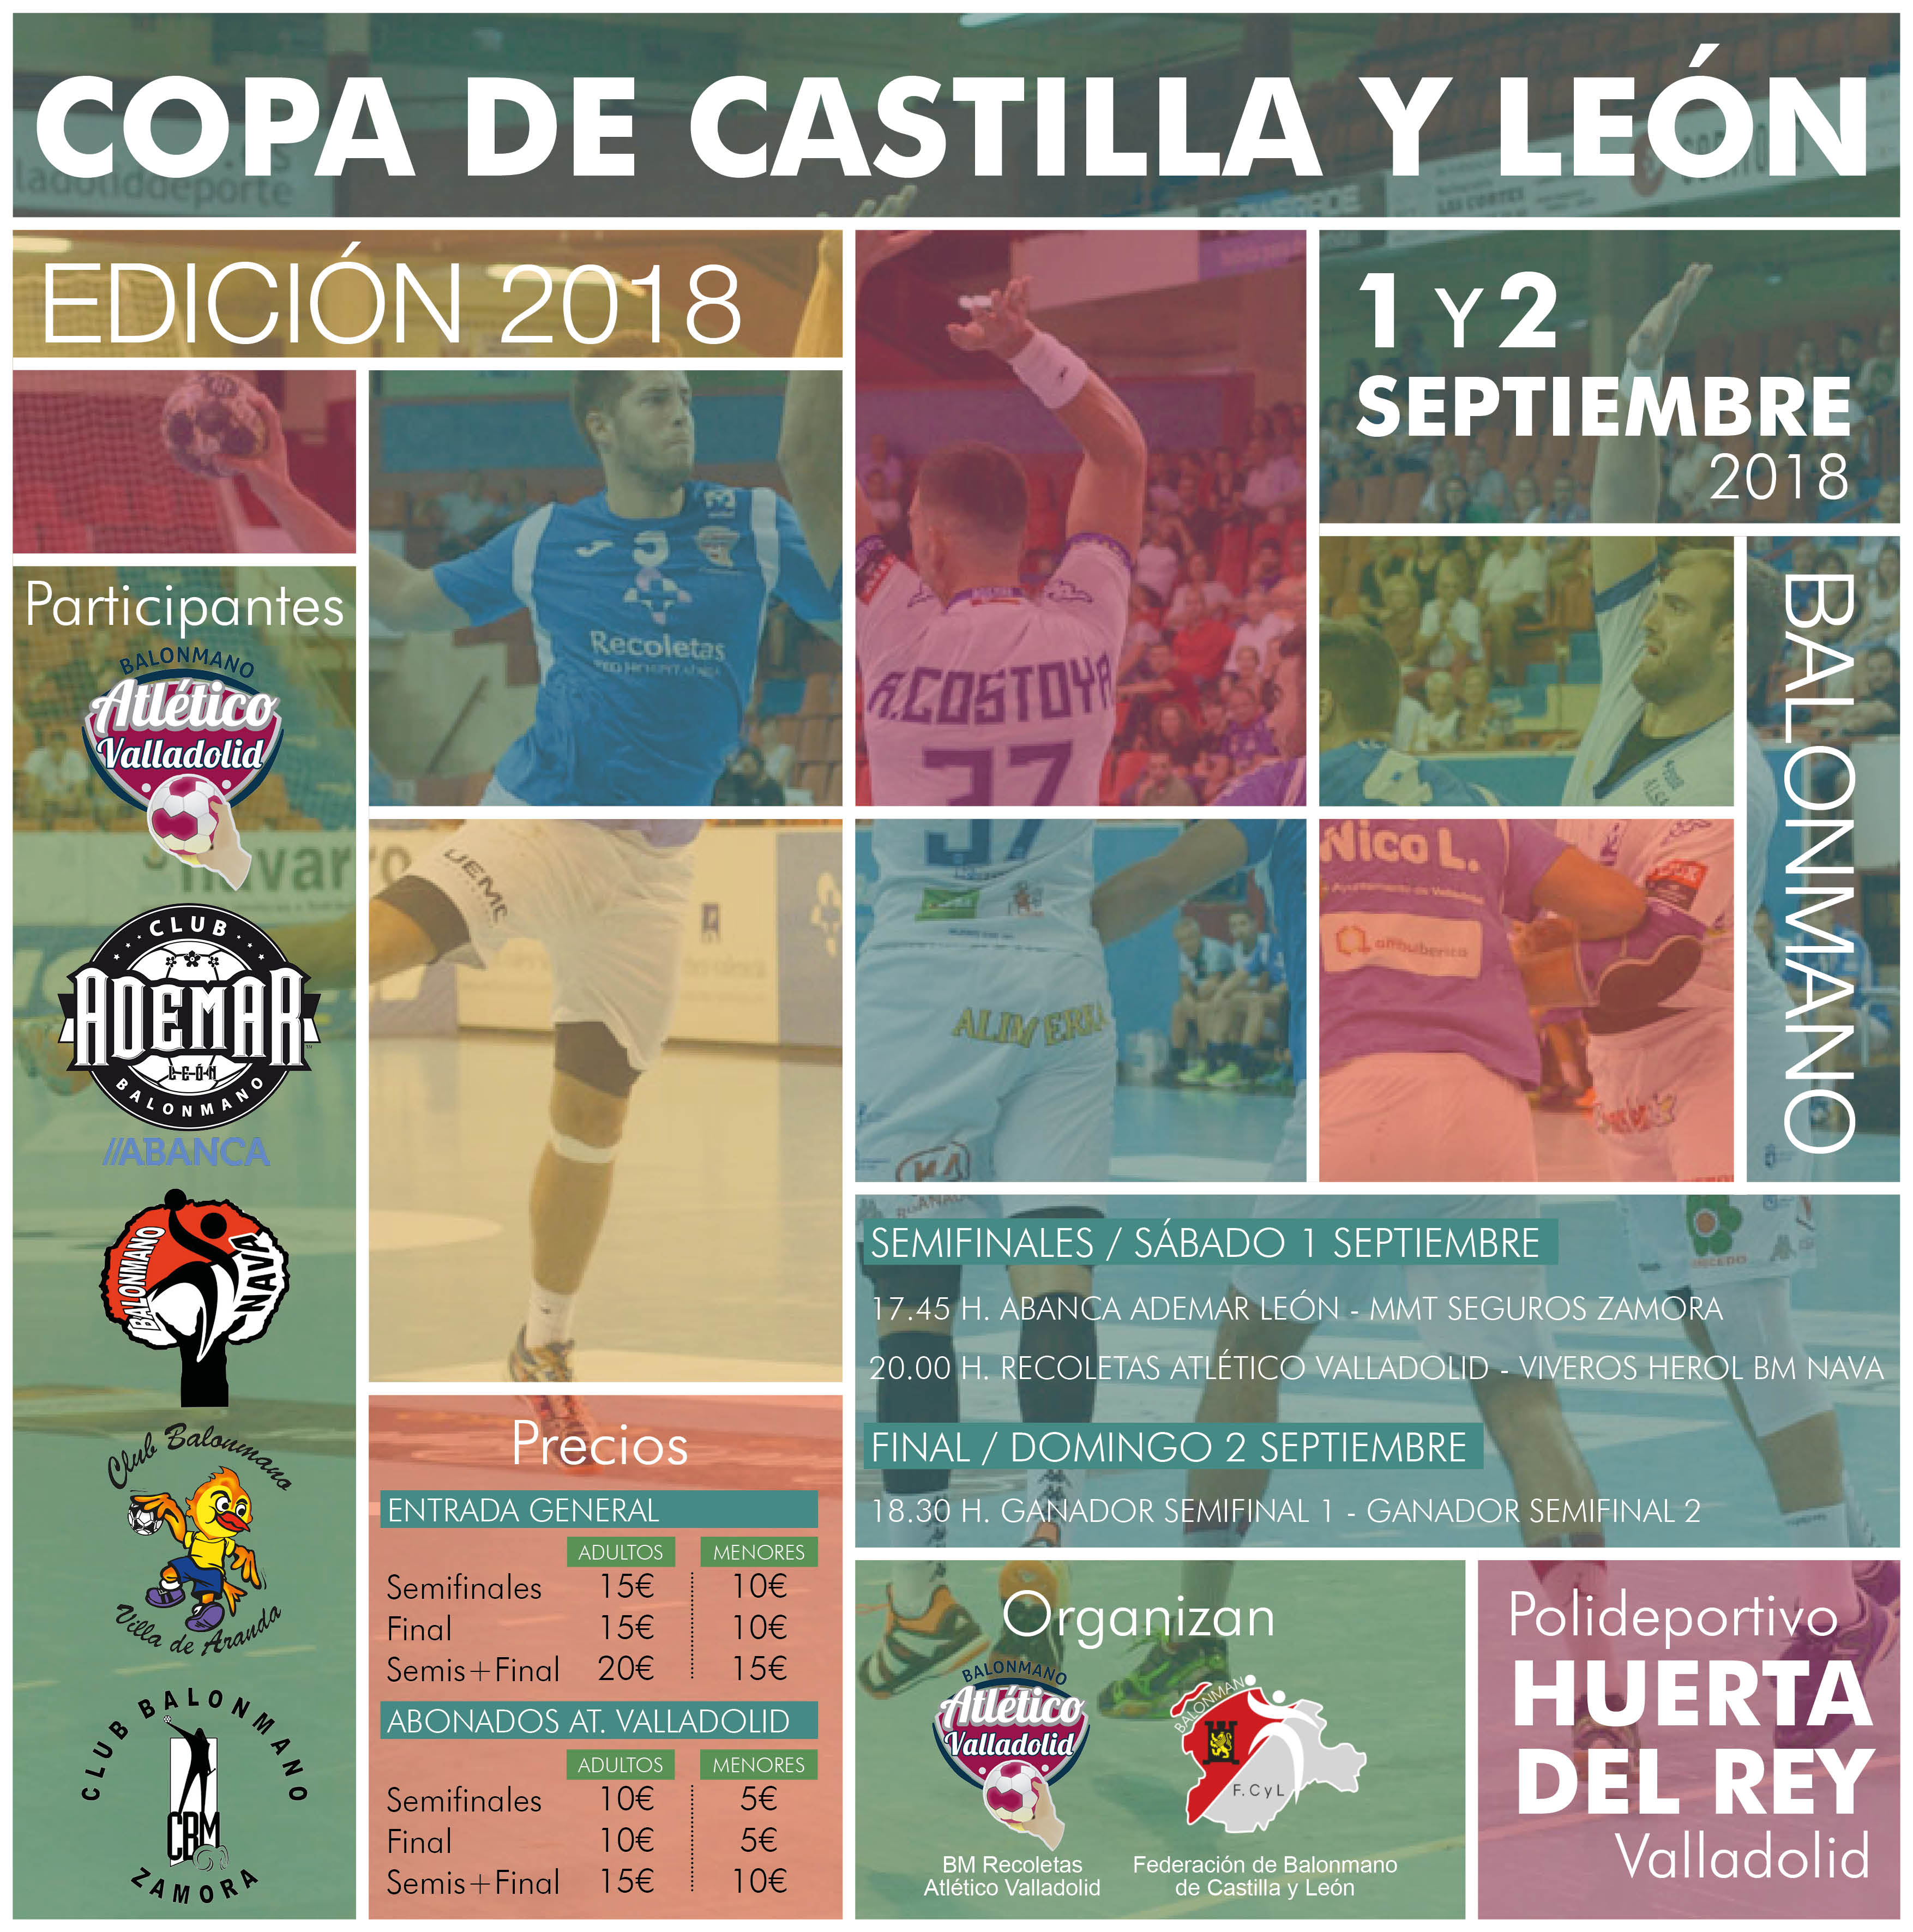 Todo preparado para la Copa de Castilla y León 2018